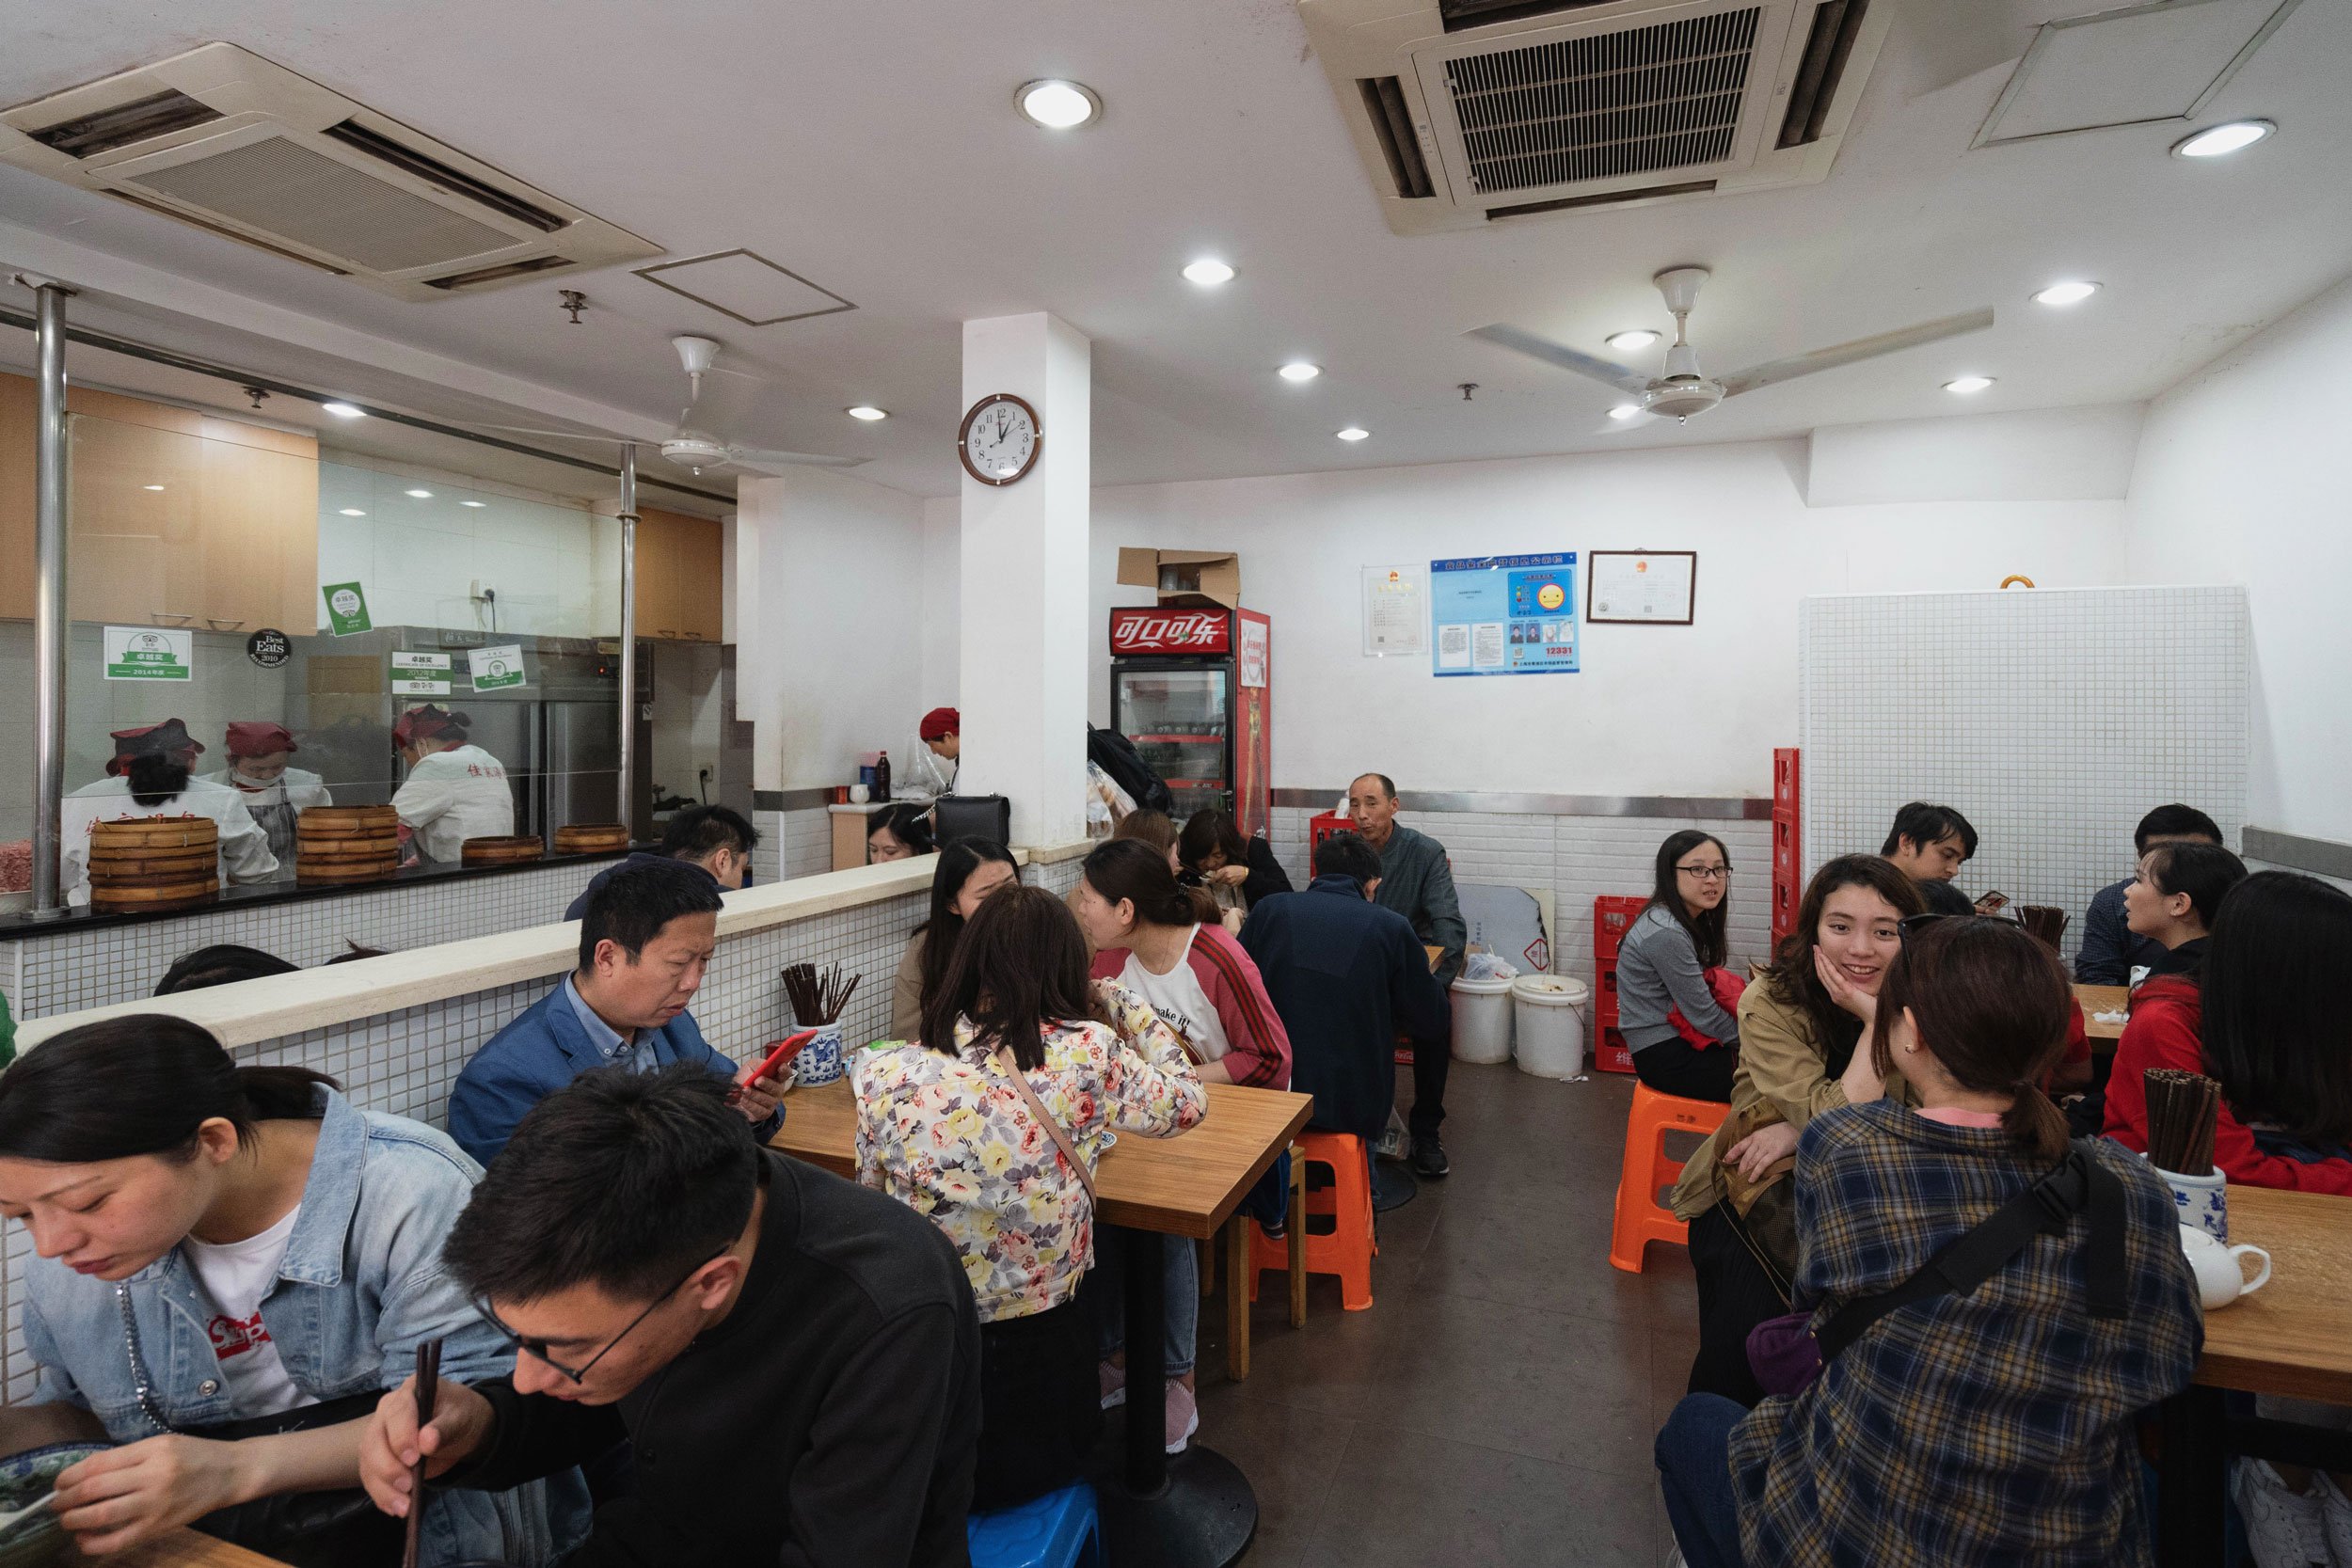 Eating area at Jia Jia Tang Bao